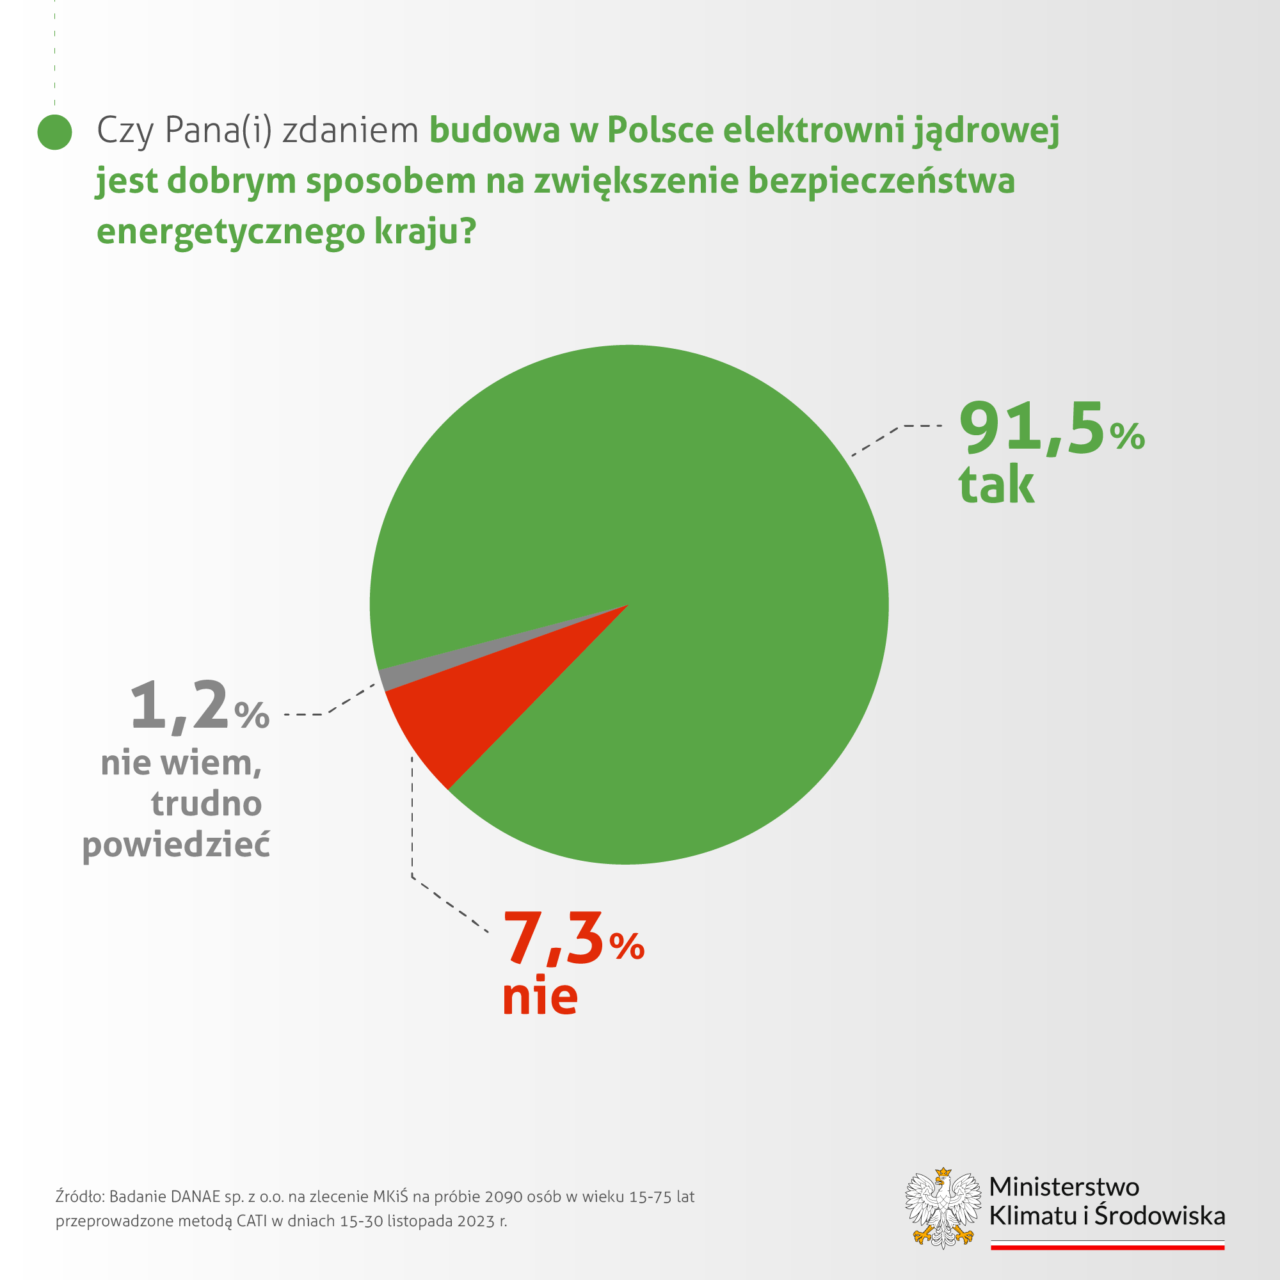 Wykres kołowy pokazujący opinie na temat budowy elektrowni jądrowej w Polsce jako sposobu na zwiększenie bezpieczeństwa energetycznego kraju, z danymi: 91,5% odpowiedziało 'tak', 7,3% 'nie', 1,2% 'nie wiem, trudno powiedzieć'. Na dole logos Ministerstwa Klimatu i Środowiska oraz informacja o źródle danych z badania DANE sp. z o.o. na zlecenie MKiŚ na próbie 2090 osób w wieku 15-75 lat przeprowadzonej metodą CATI w dniach 15-30 listopada 2023 r. Pokazuje to, że elektrownie atomowe cieszą się wysokim poparciem